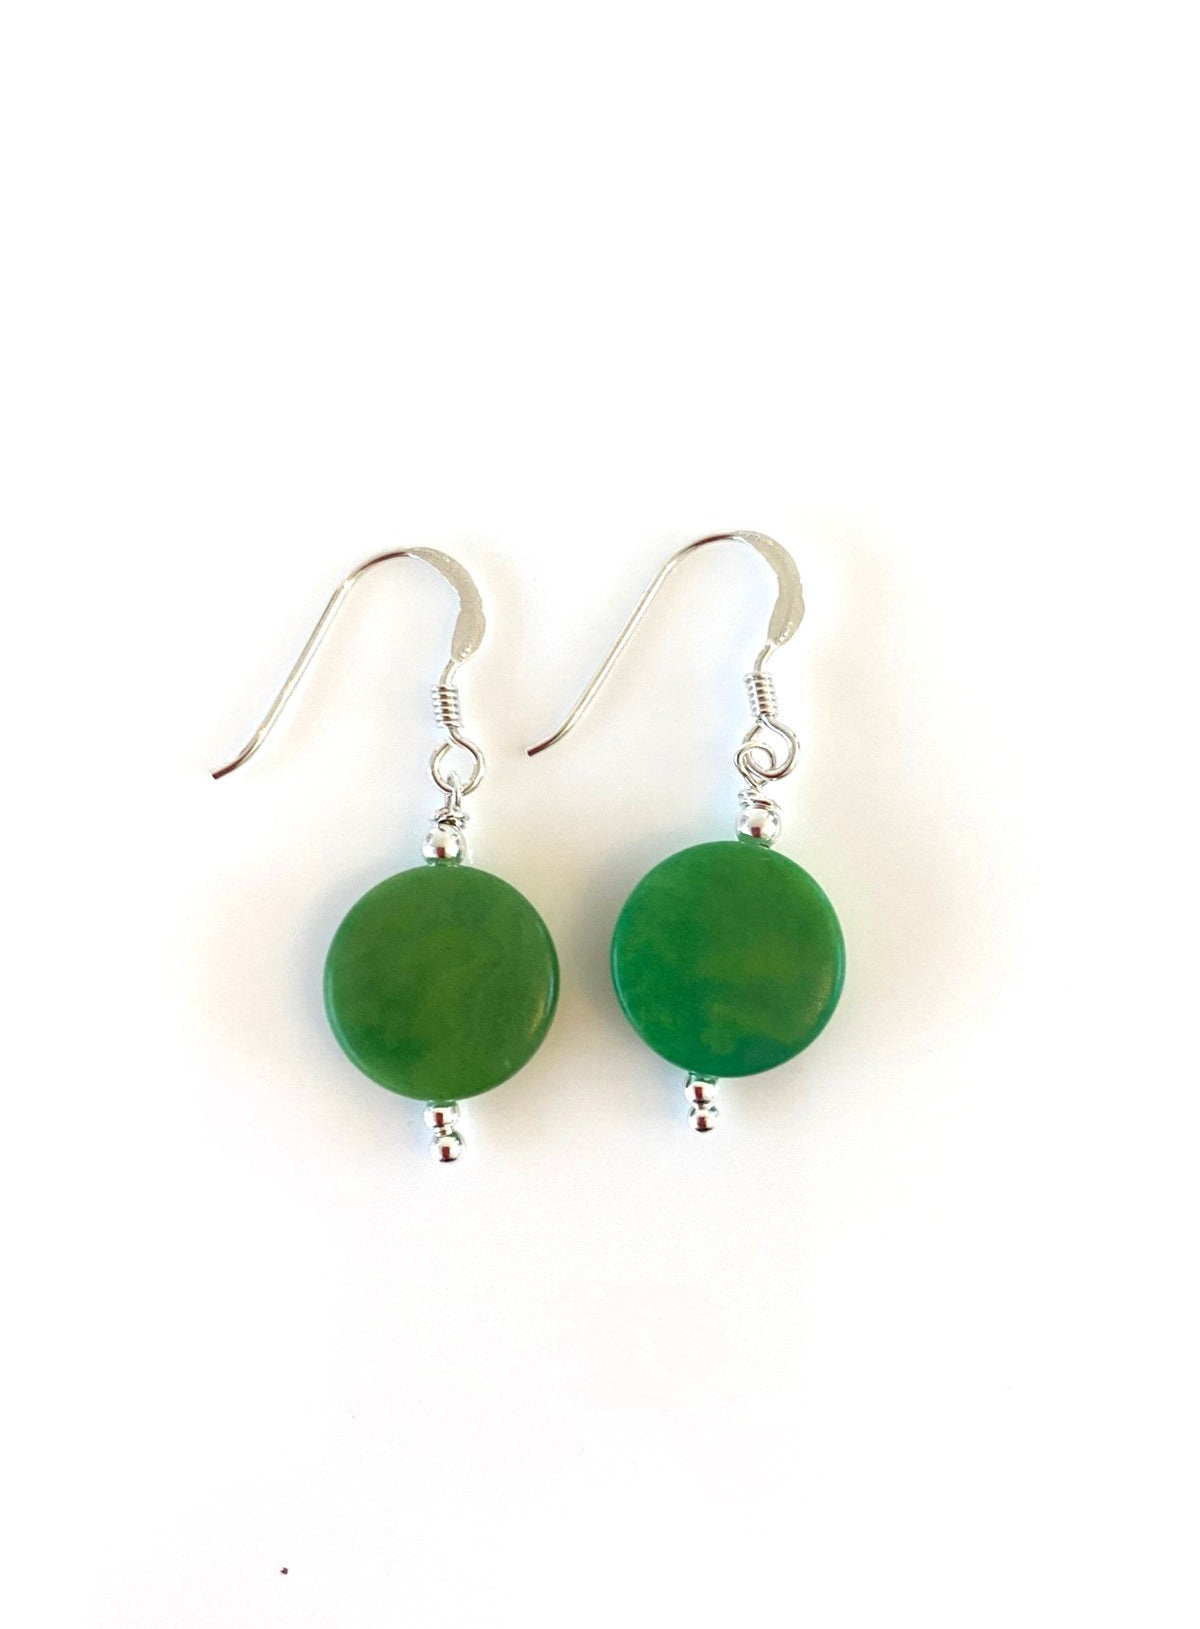 Andrea earrings - Green Emmerald